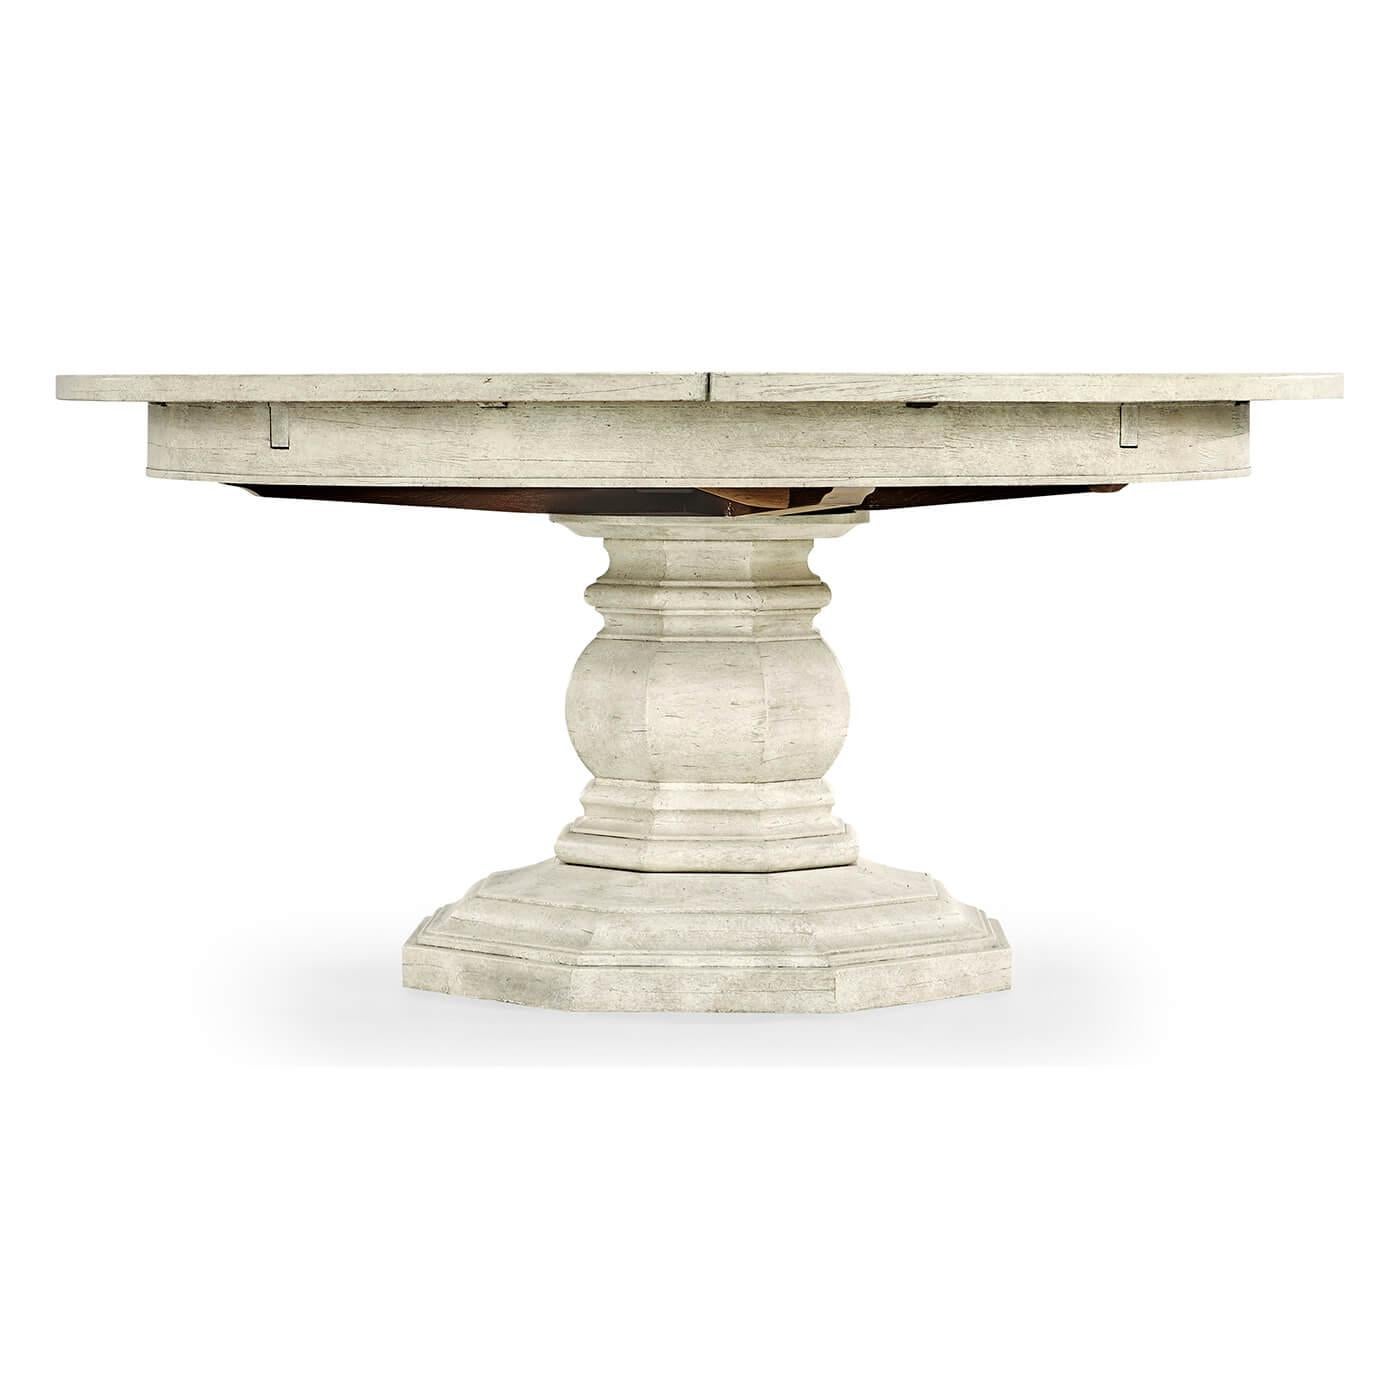 Ein weiß getünchter runder Esstisch im französischen Provinzialstil mit rustikaler Oberfläche und sichtbaren Sägespuren, der auf einem massiven Balustersockel steht. Der Tisch lässt sich durch einen ausgeklügelten Mechanismus mit